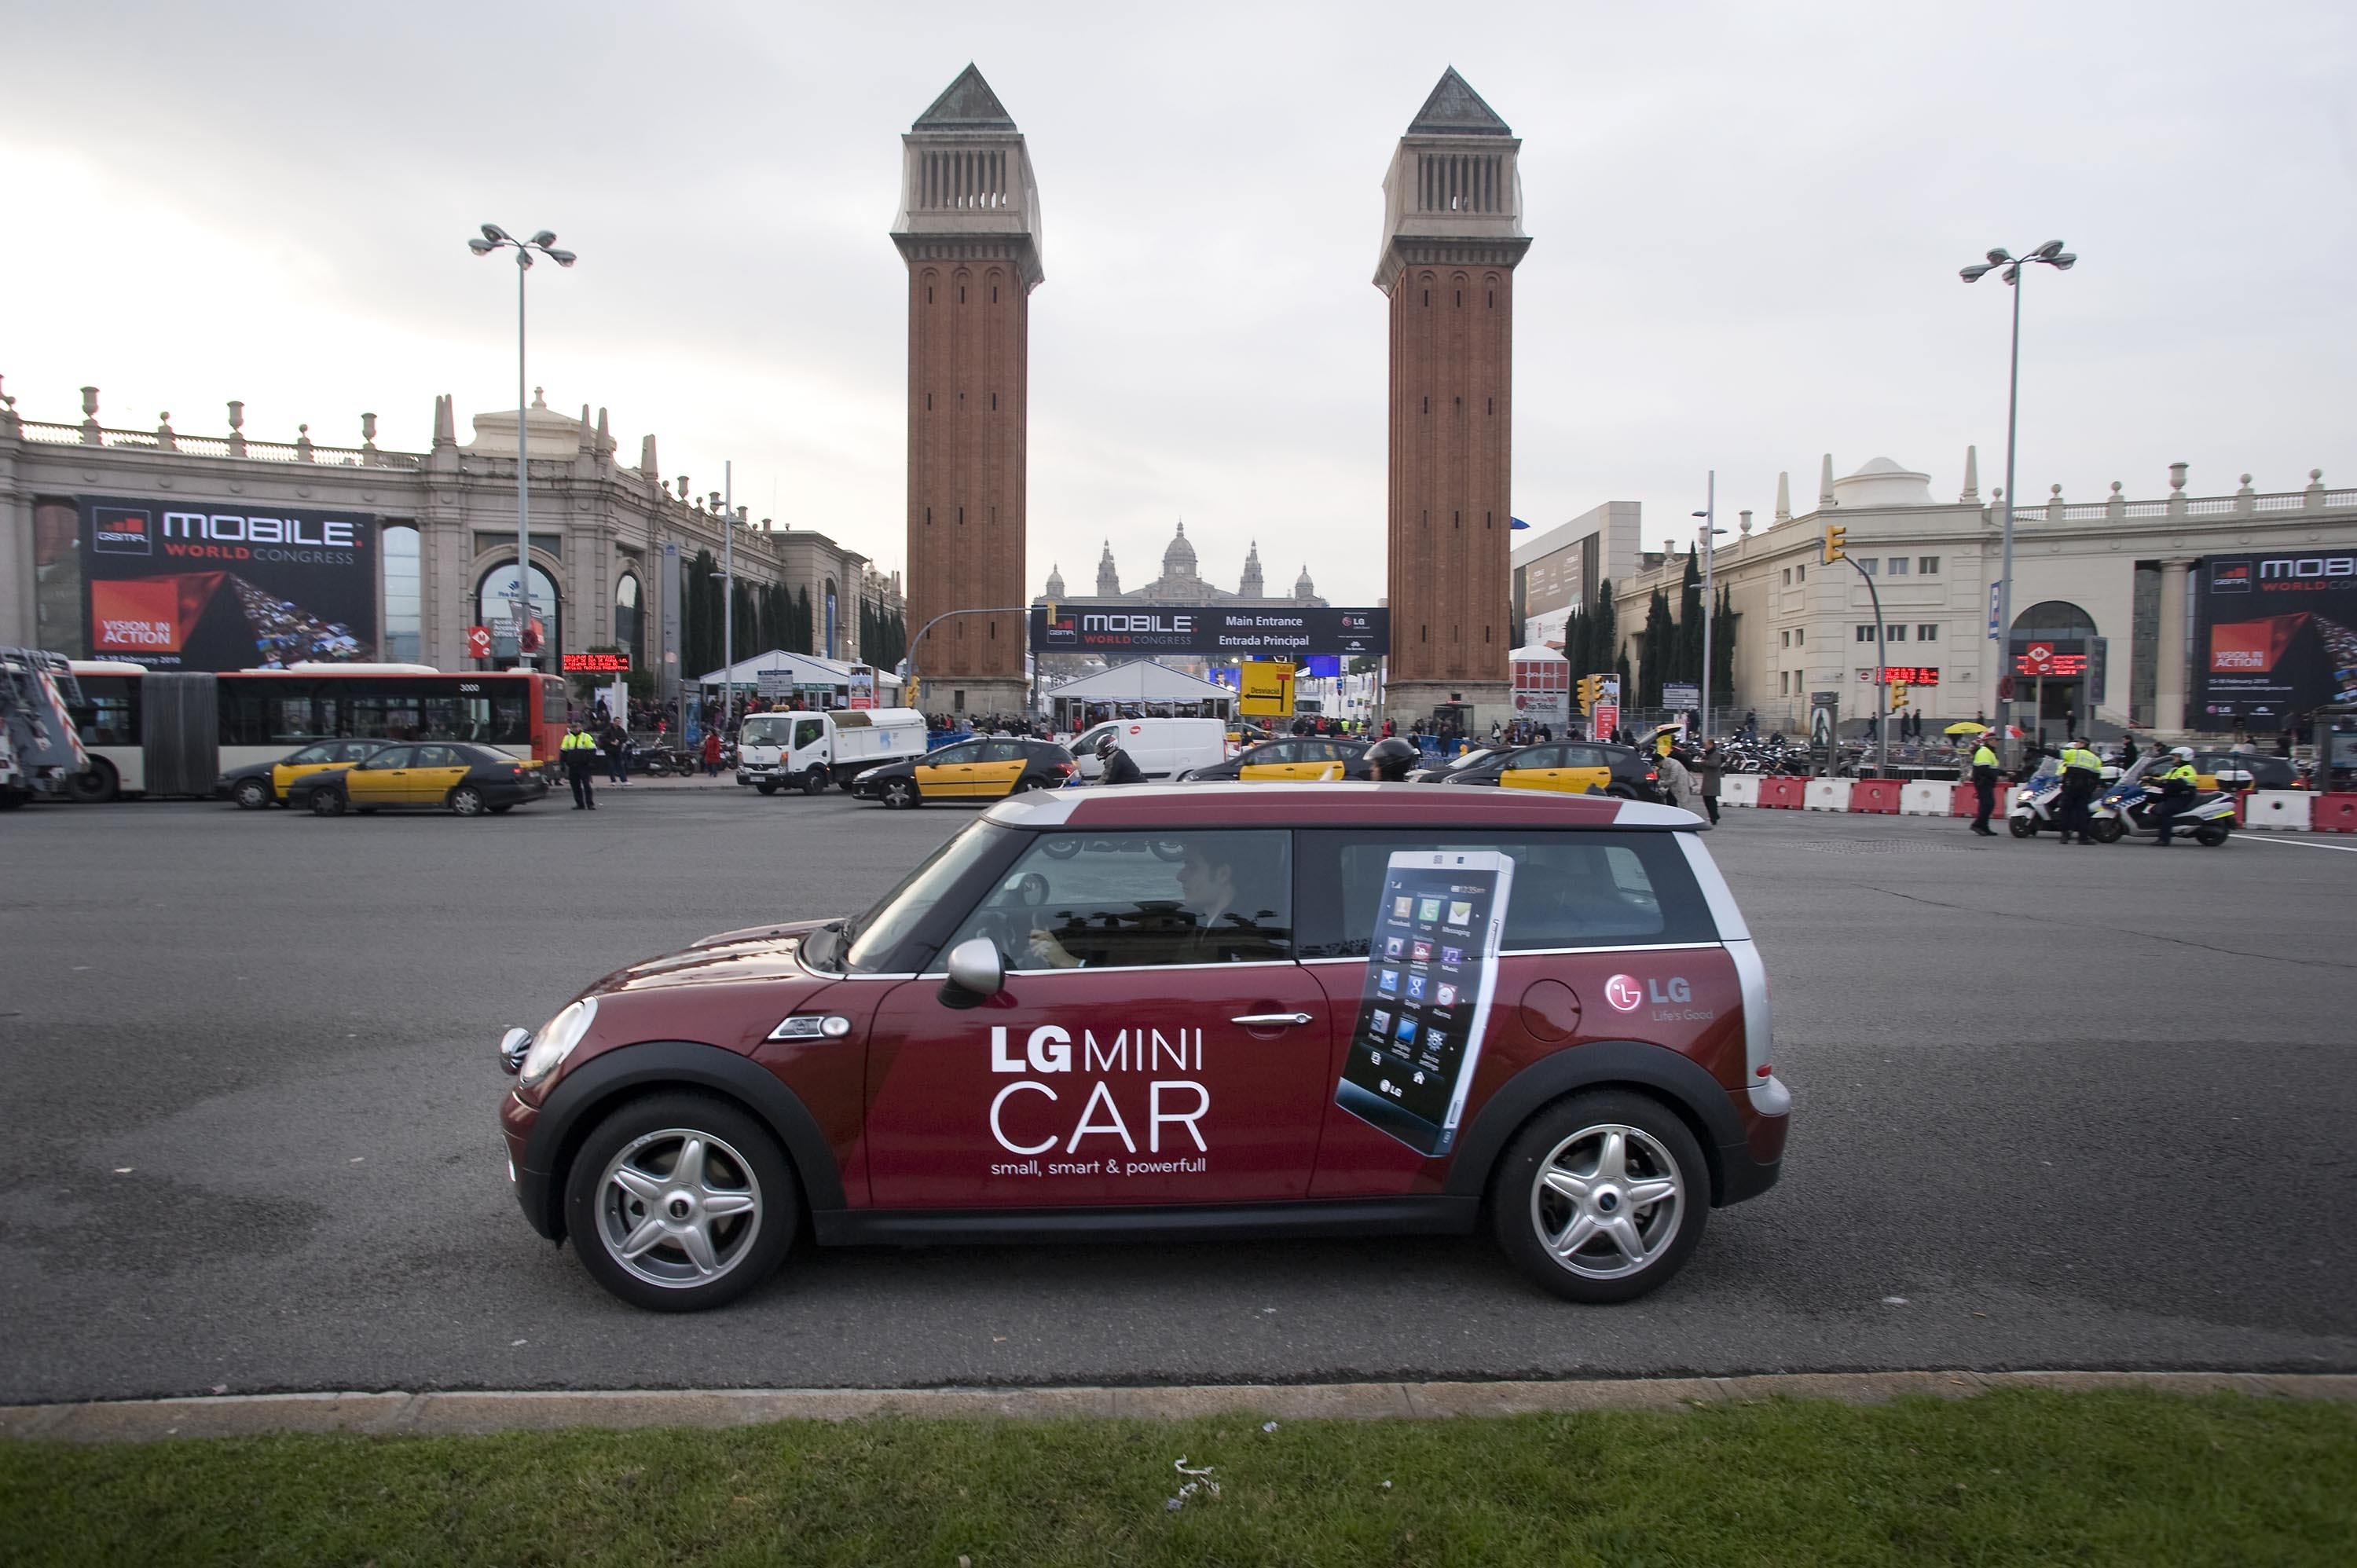 LG_Mini_Car_at_Plaza_de_Espana